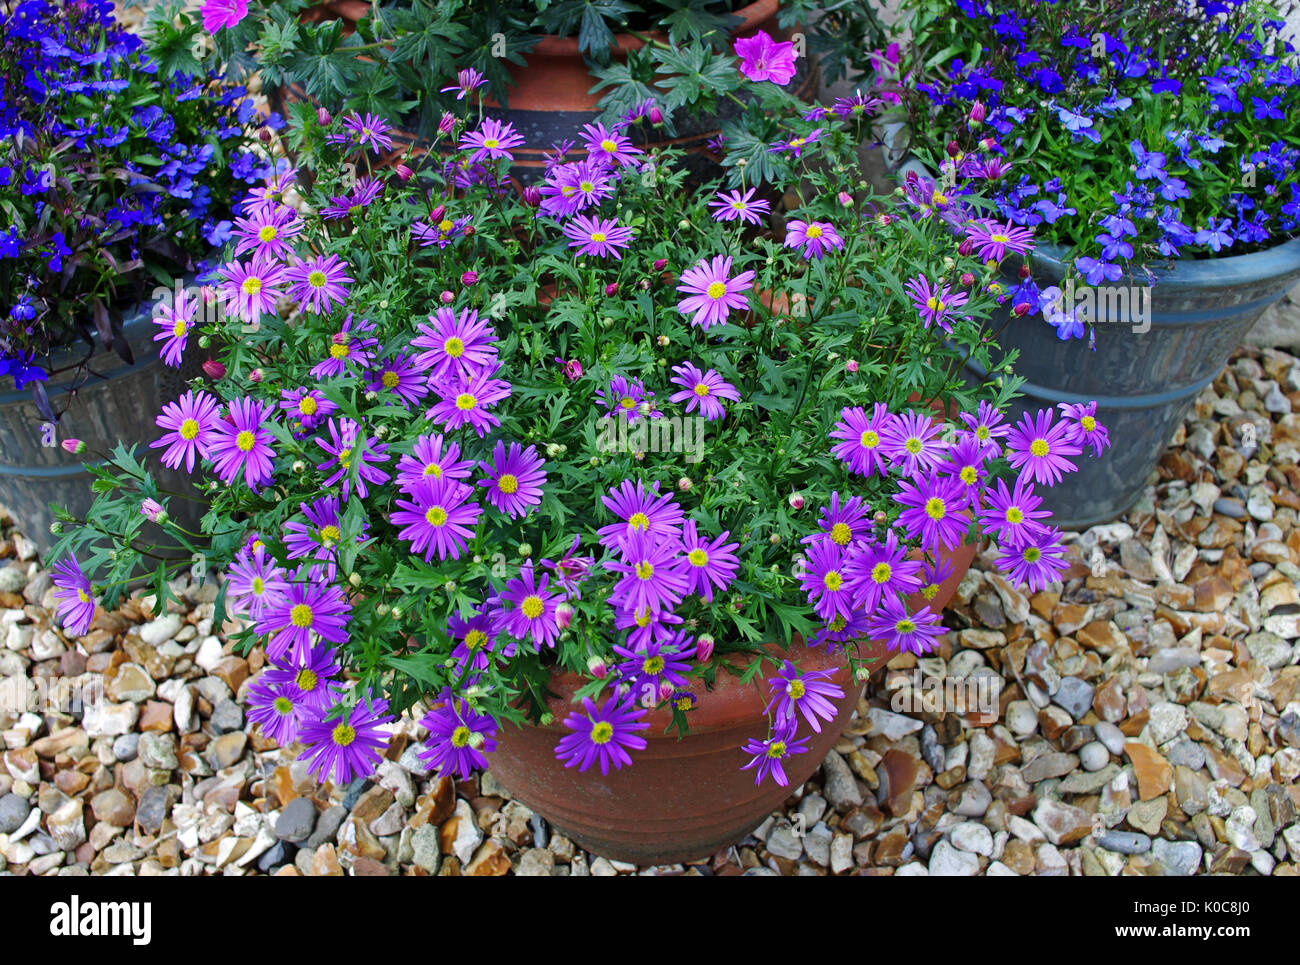 Las plantas de floración estival brachyscome morado y azul lobelia en macetas en el patio de grava ornamentales. Foto de stock